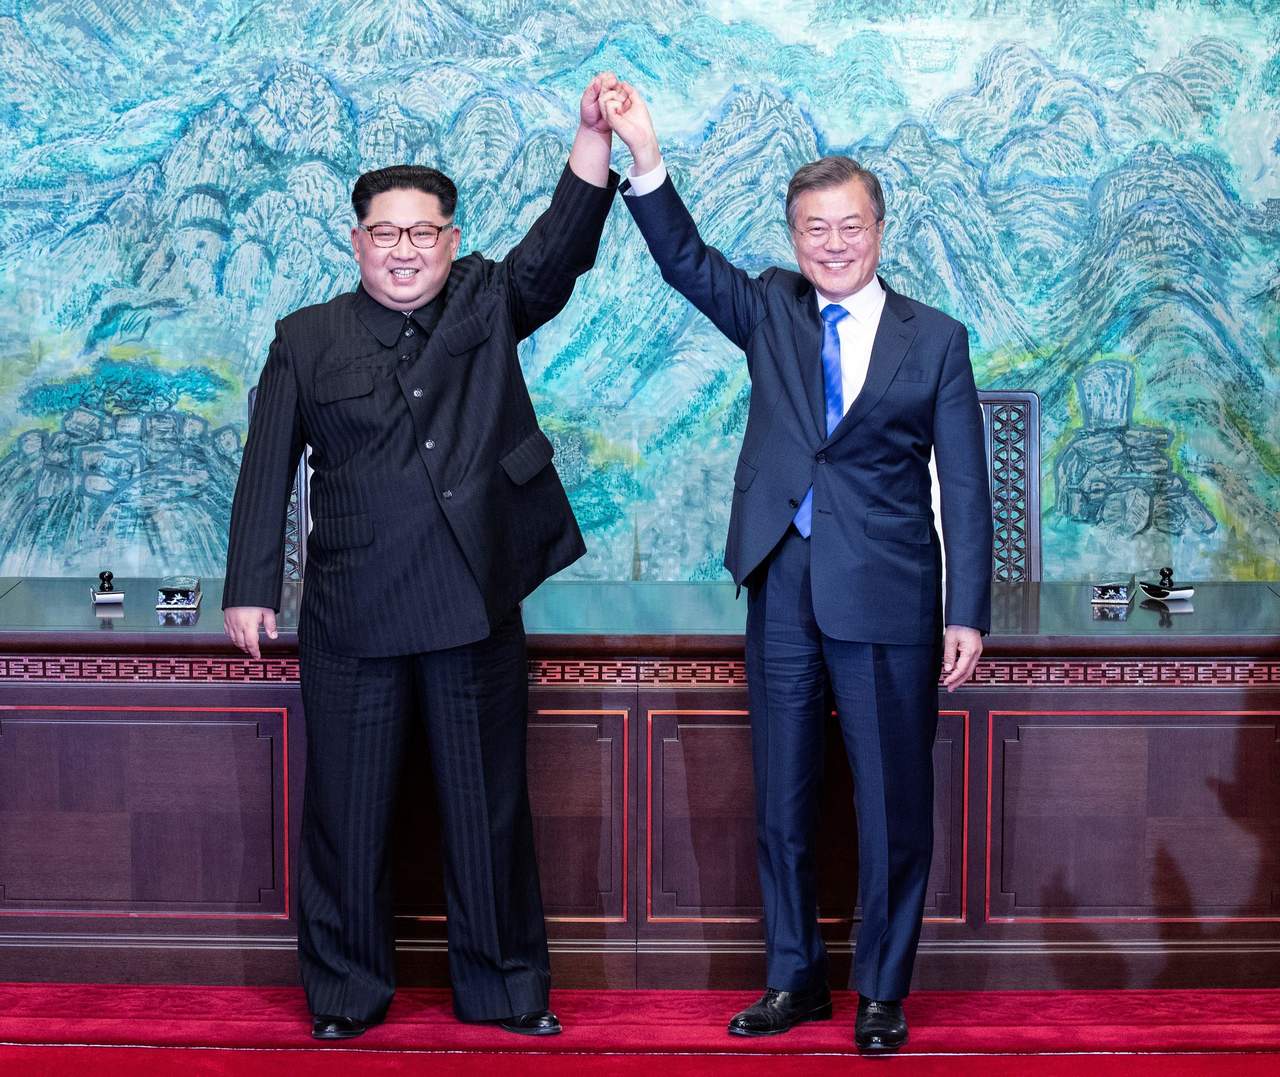 En una histórica cumbre en la frontera más fortificada del mundo, ambas partes buscan alcanzar algún tipo de tratado de paz, pero, sobre todo, un acuerdo sobre la desnuclearización del Norte. (EFE)